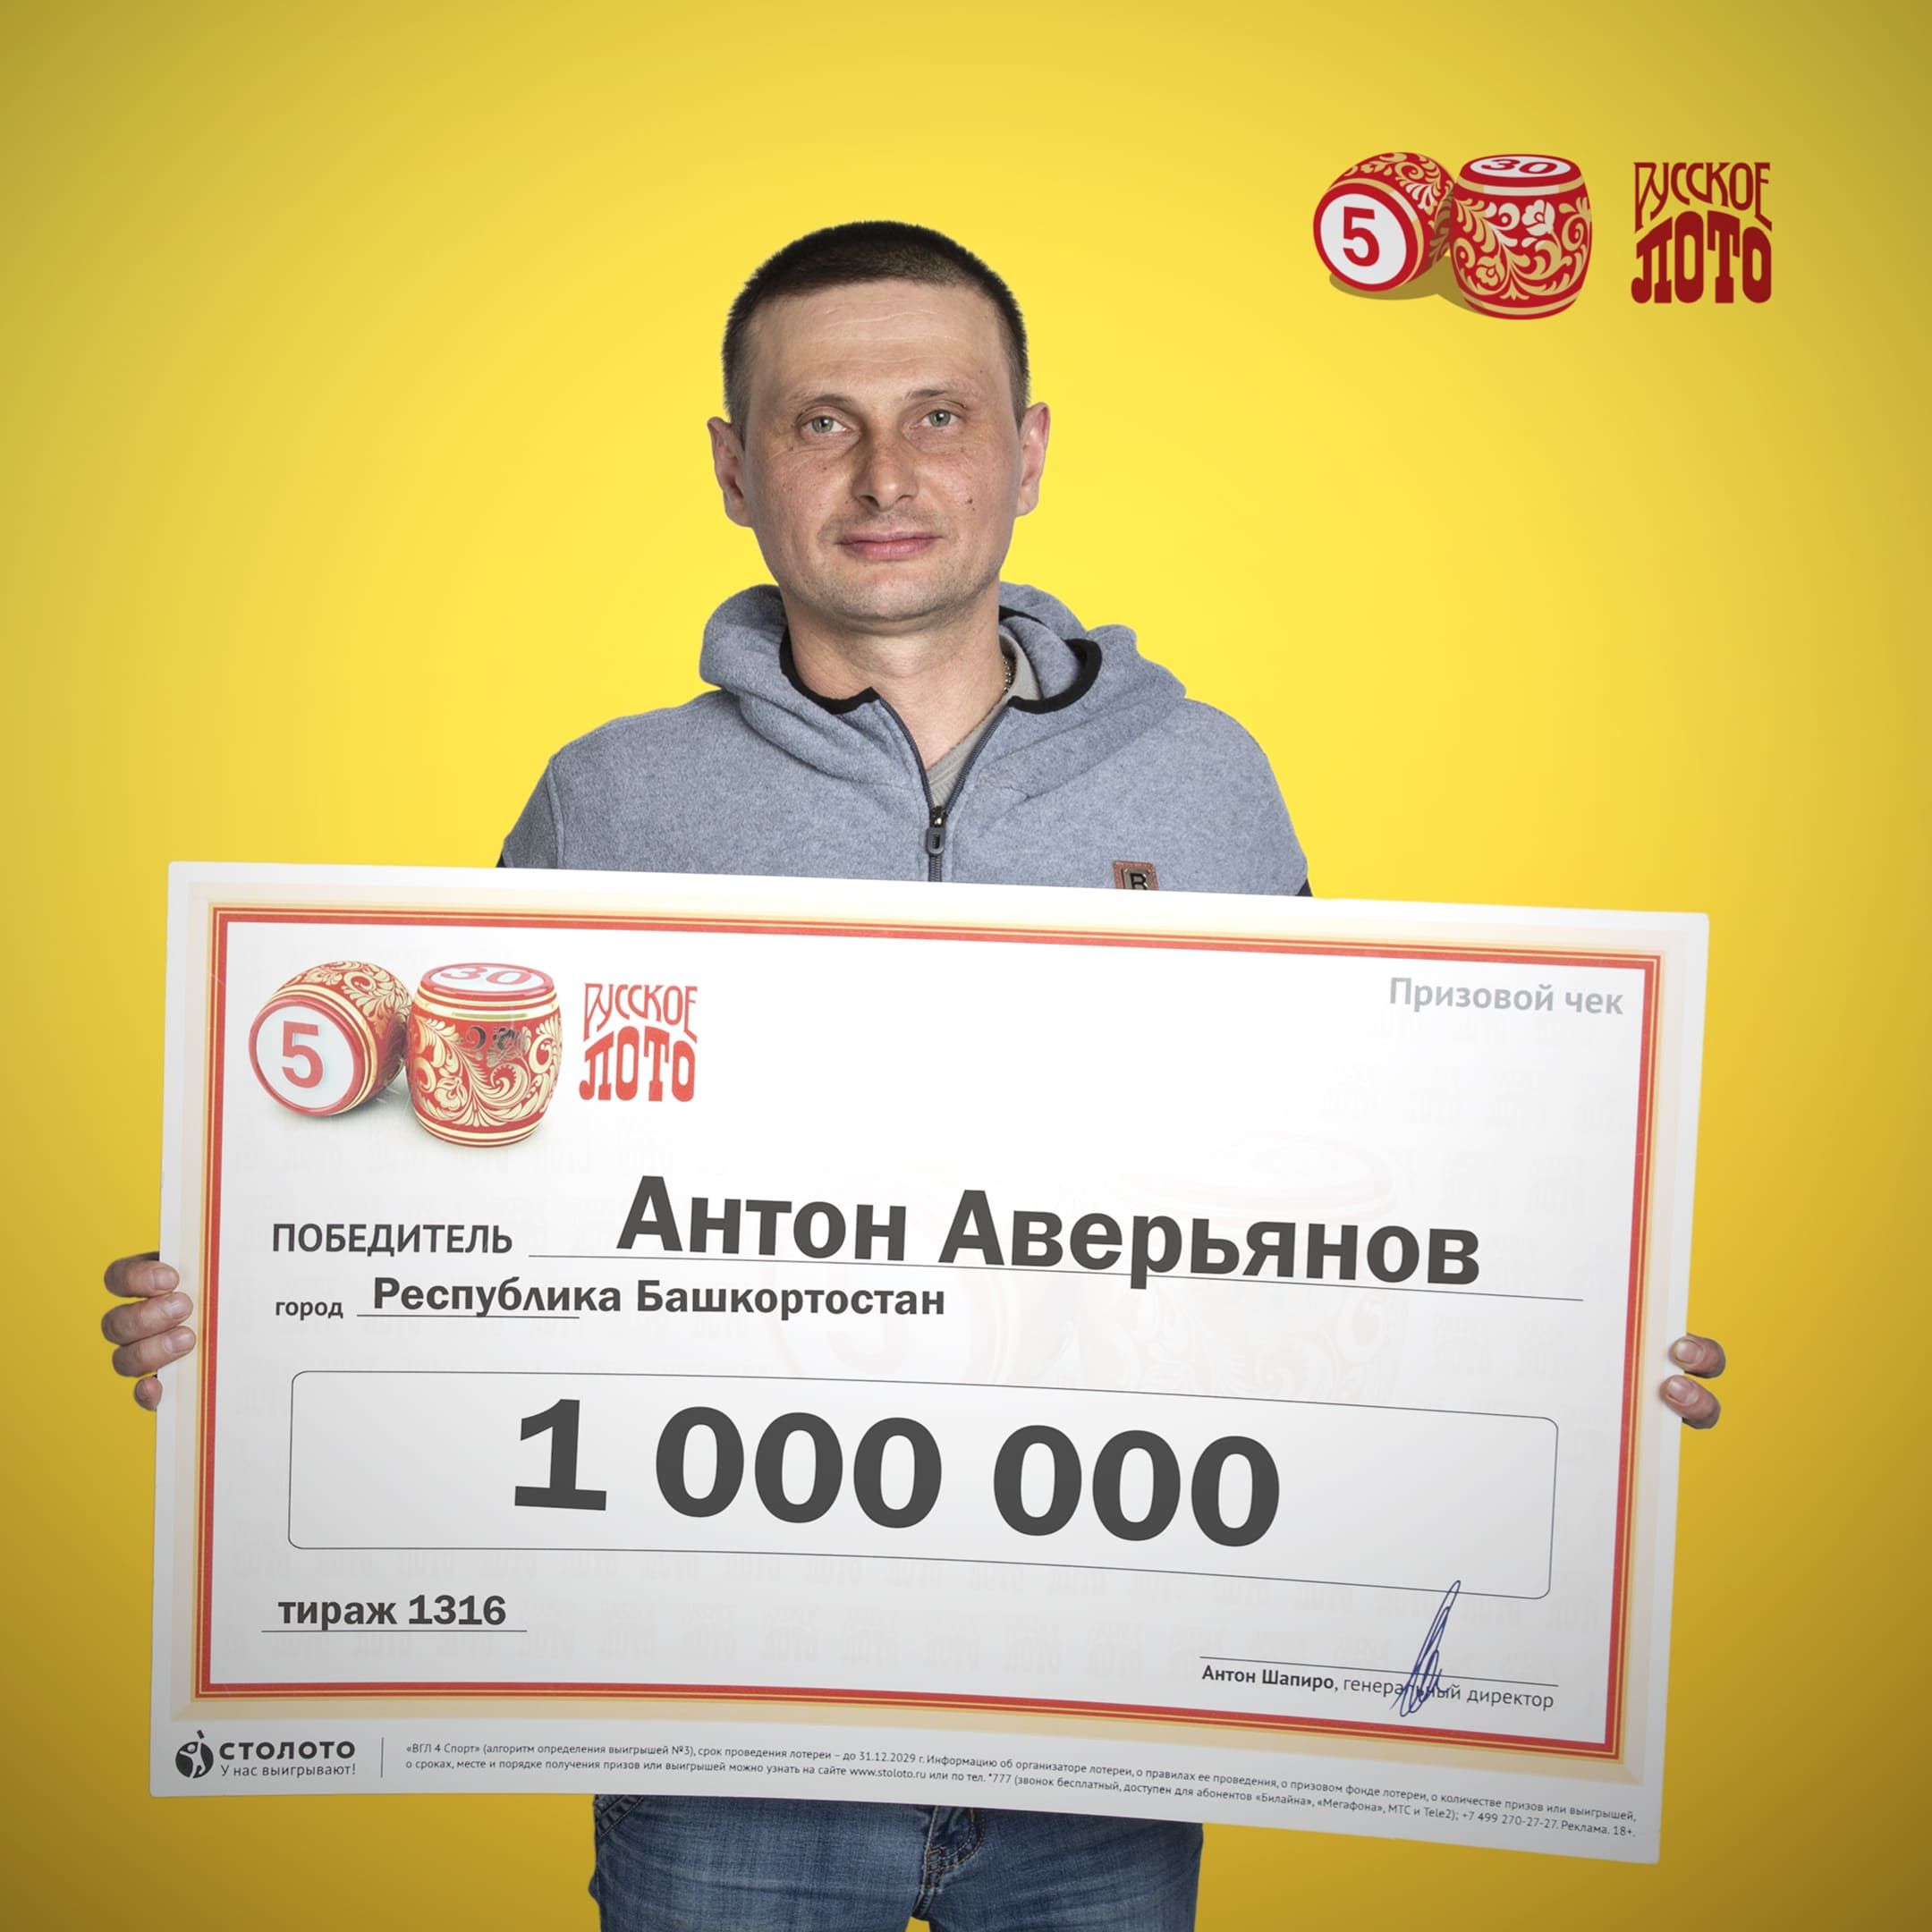 Антон Аверьянов